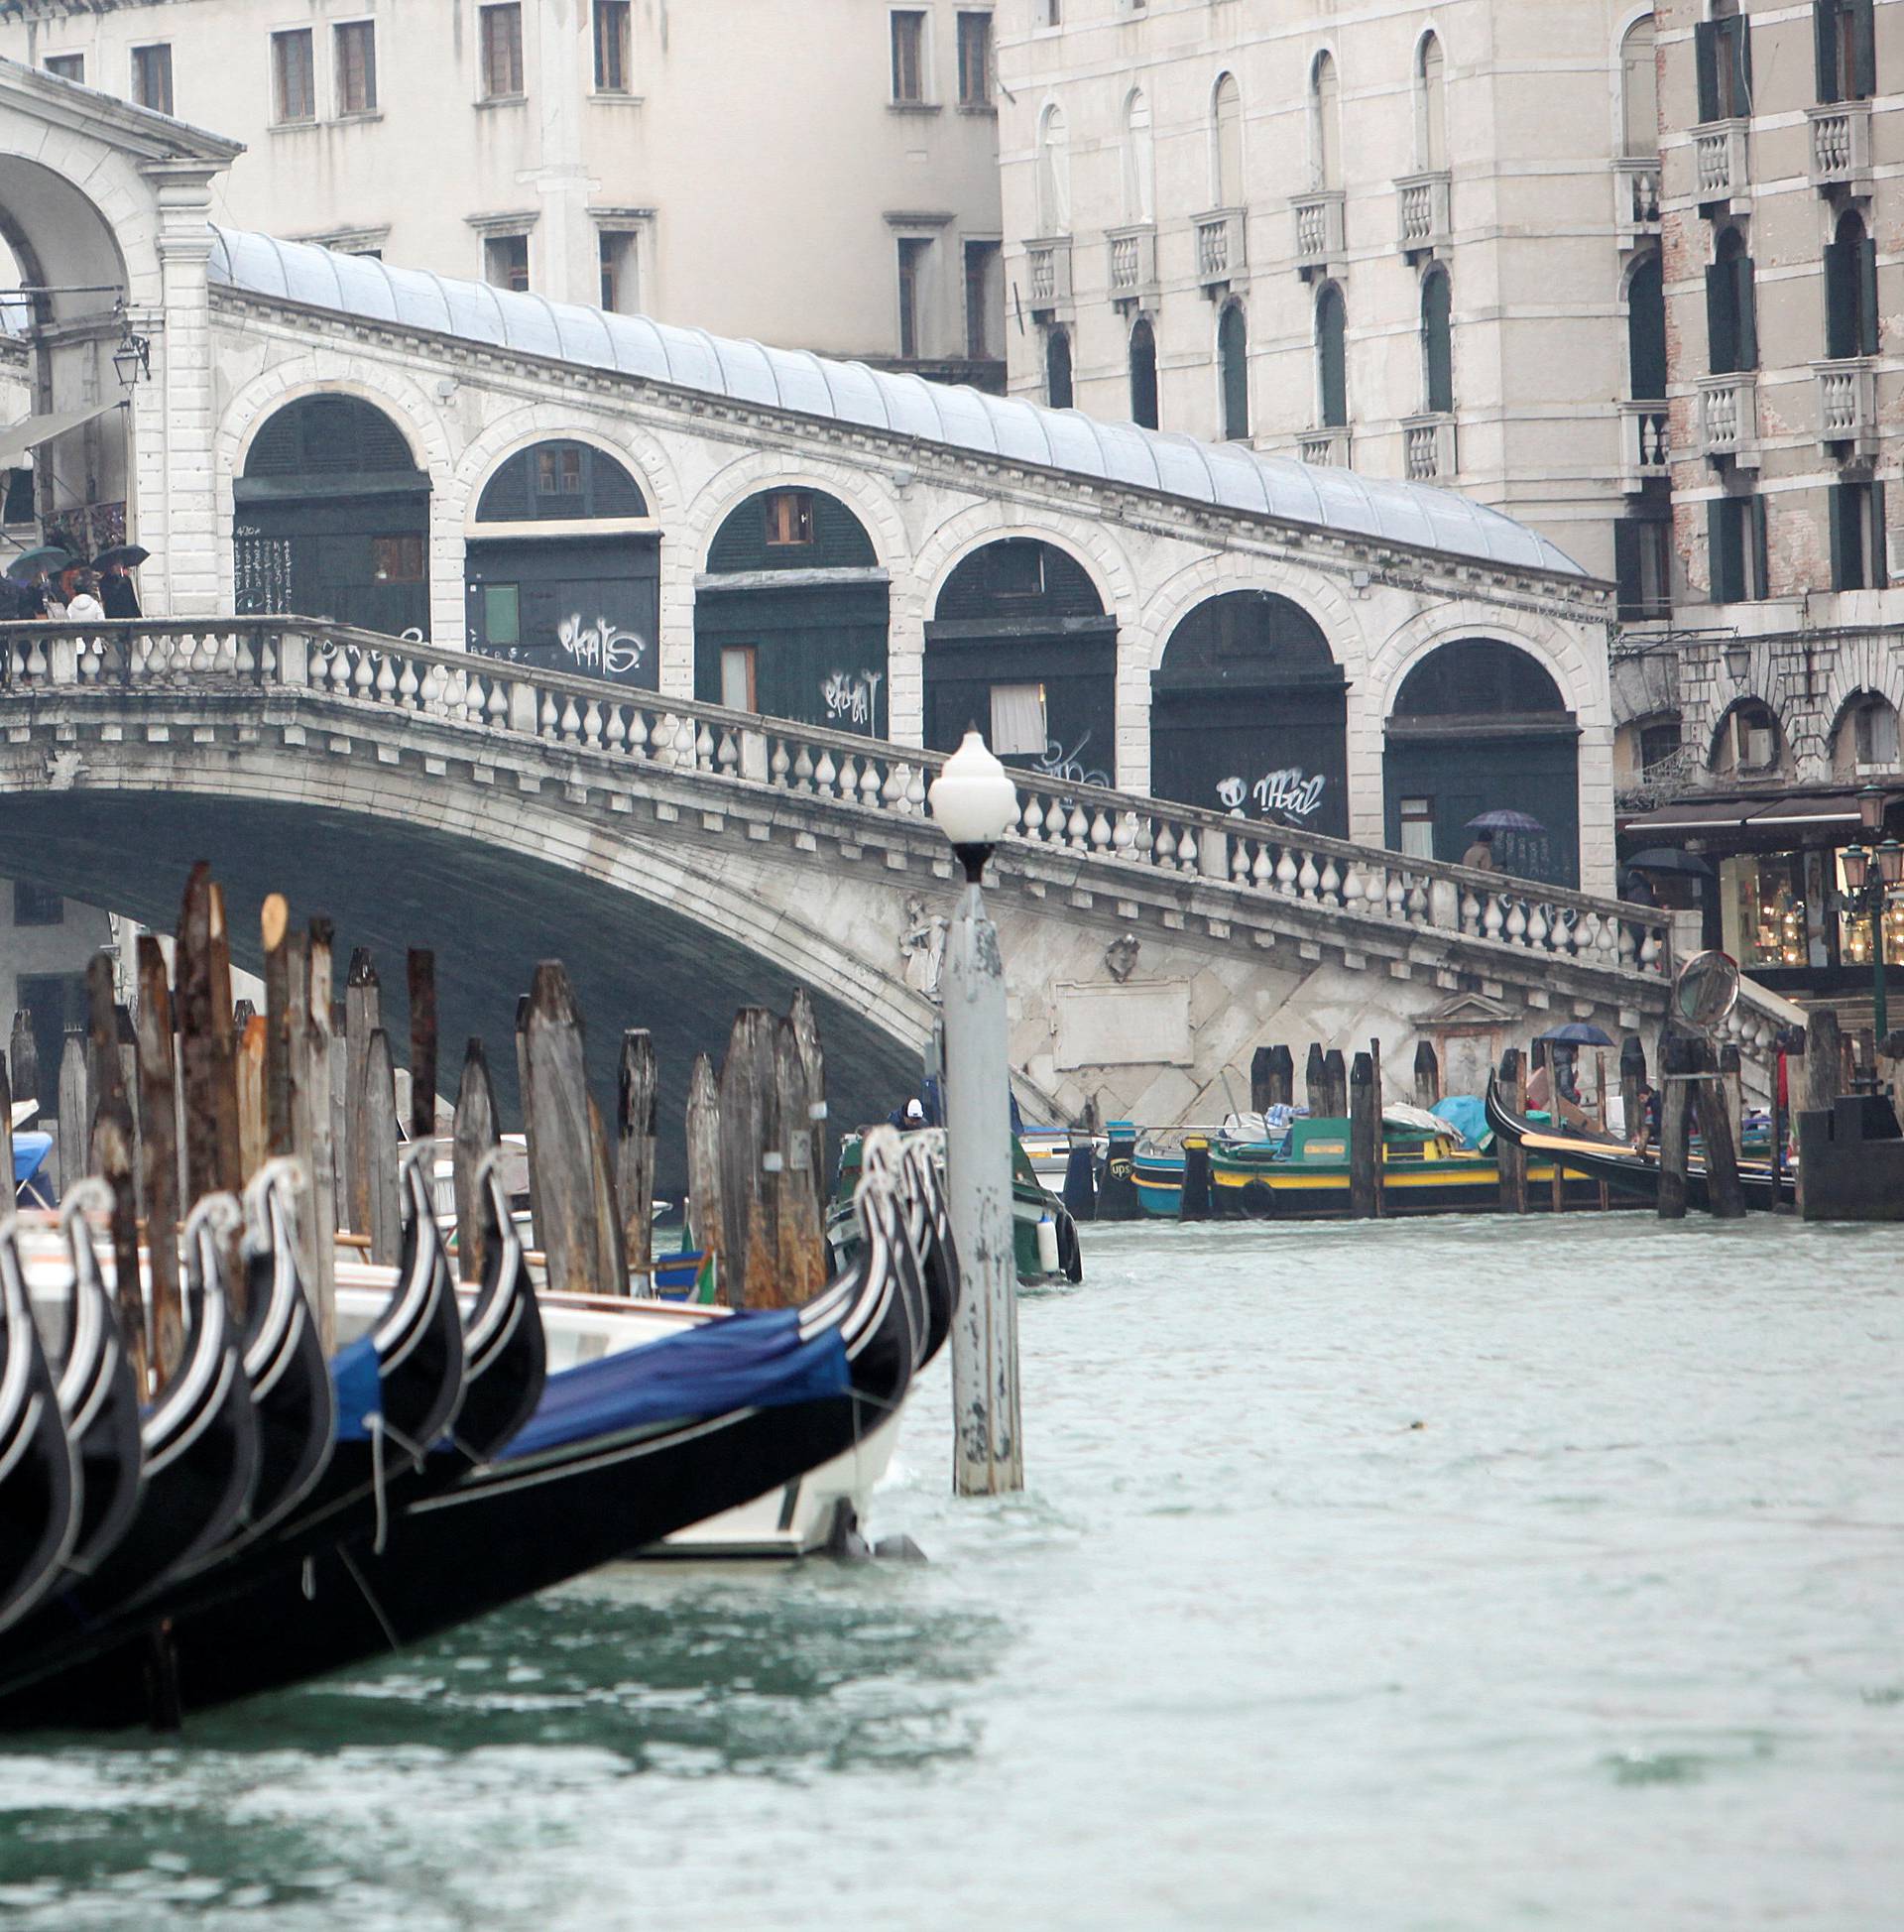 FILE PHOTO: A view of Rialto Bridge in Venice